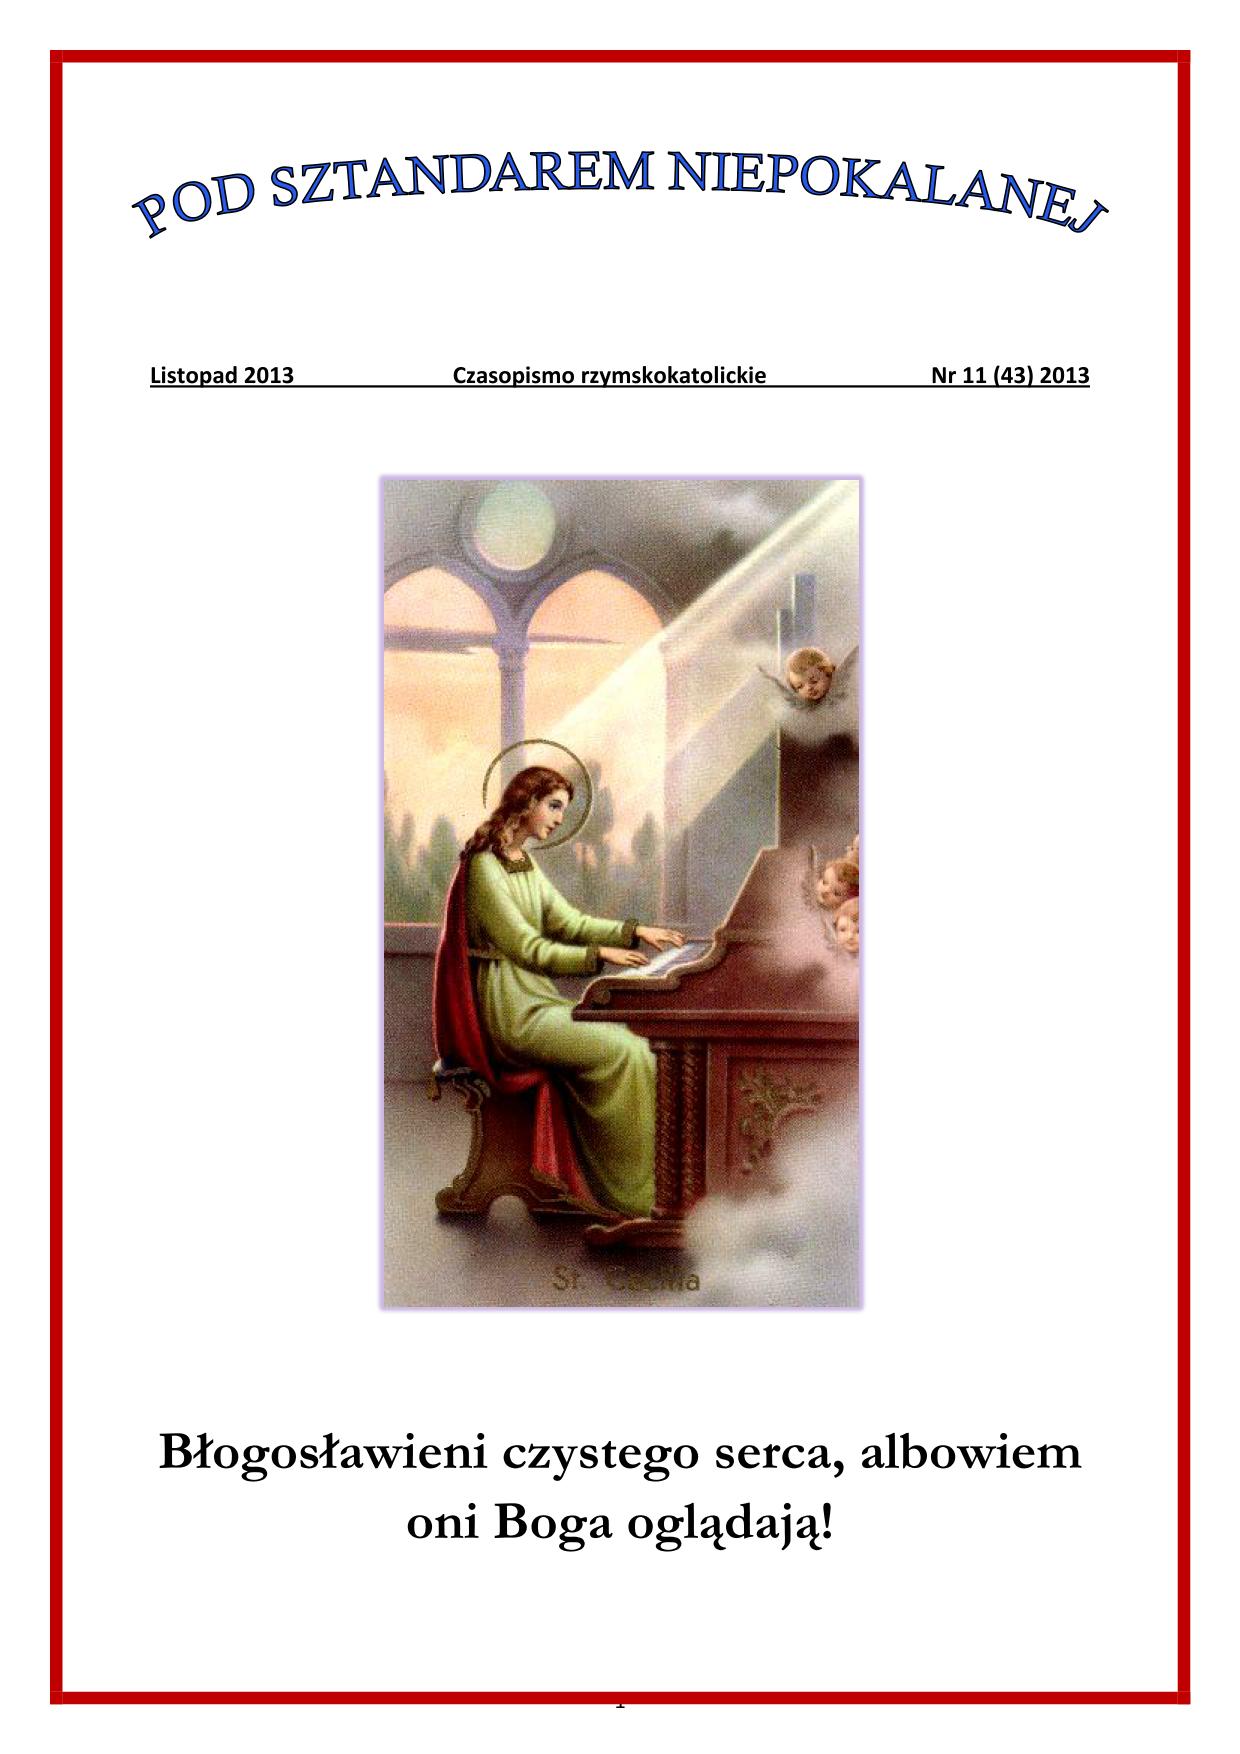 "Pod Sztandarem Niepokalanej". Nr 43. Listopad 2013. Czasopismo rzymskokatolickie.